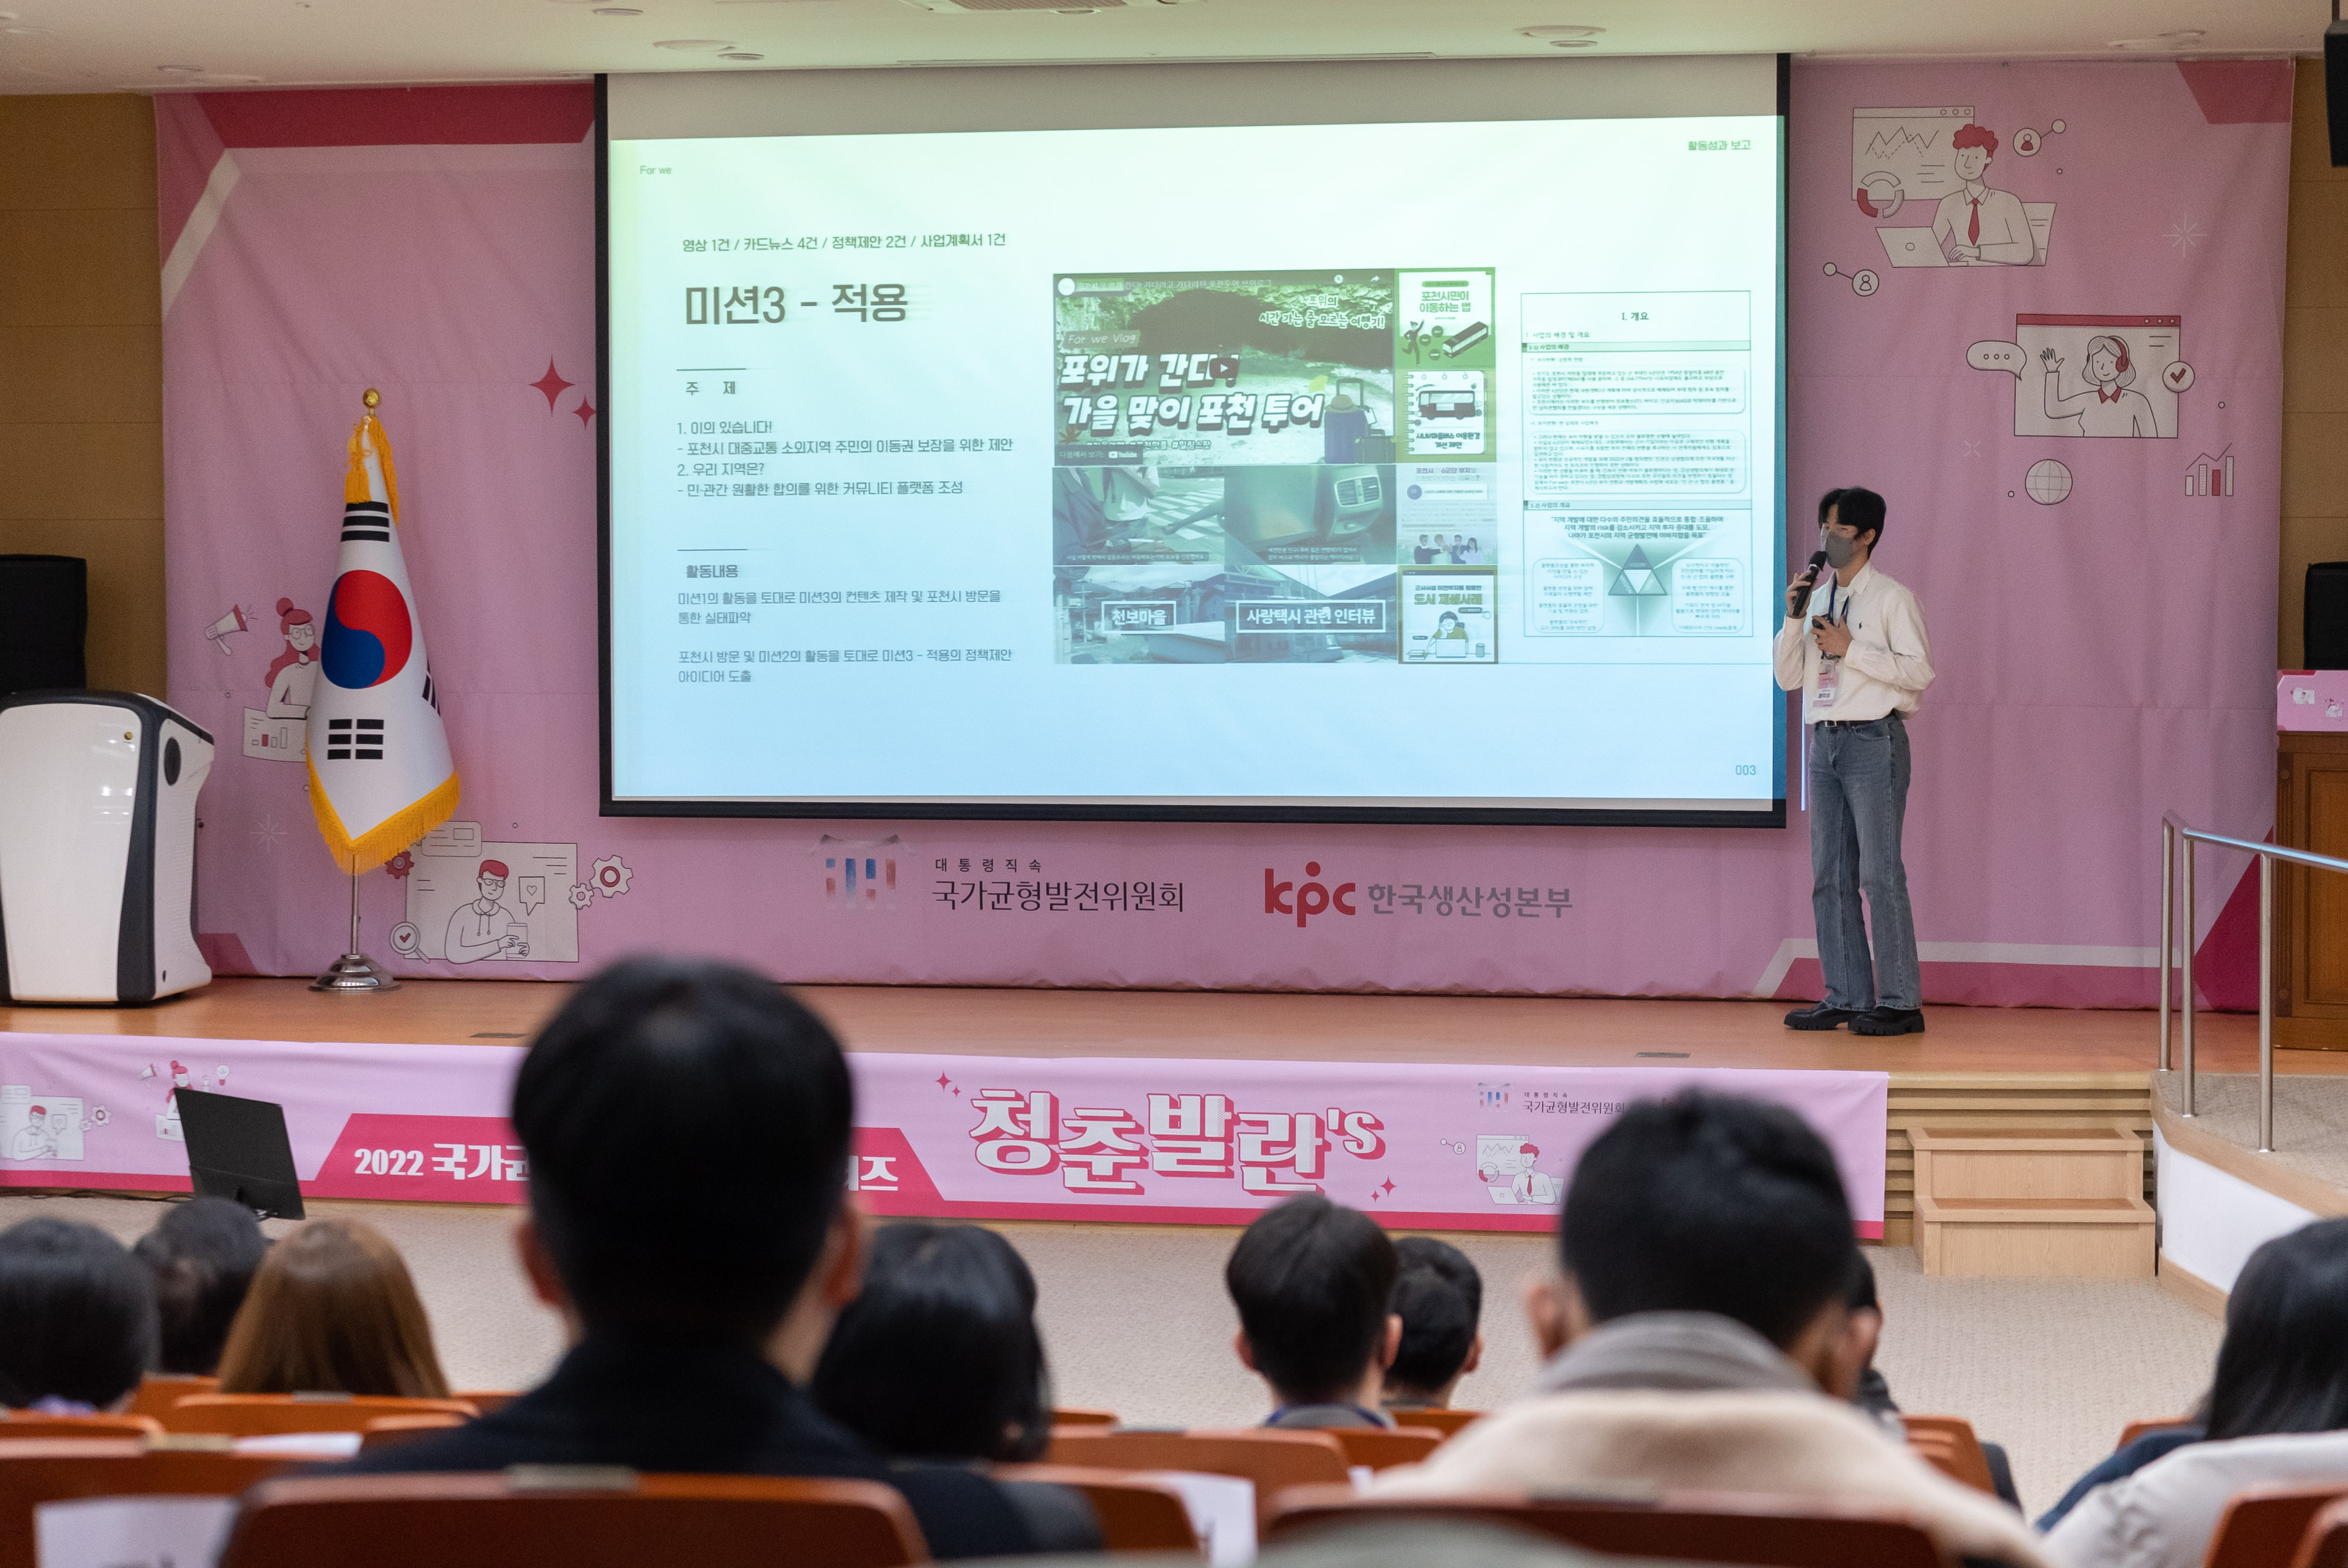 12월 19일 정부세종청사에서 2022 국가균형발전 청년 서포터즈 청춘발란's 해단식이 열렸다.(2)